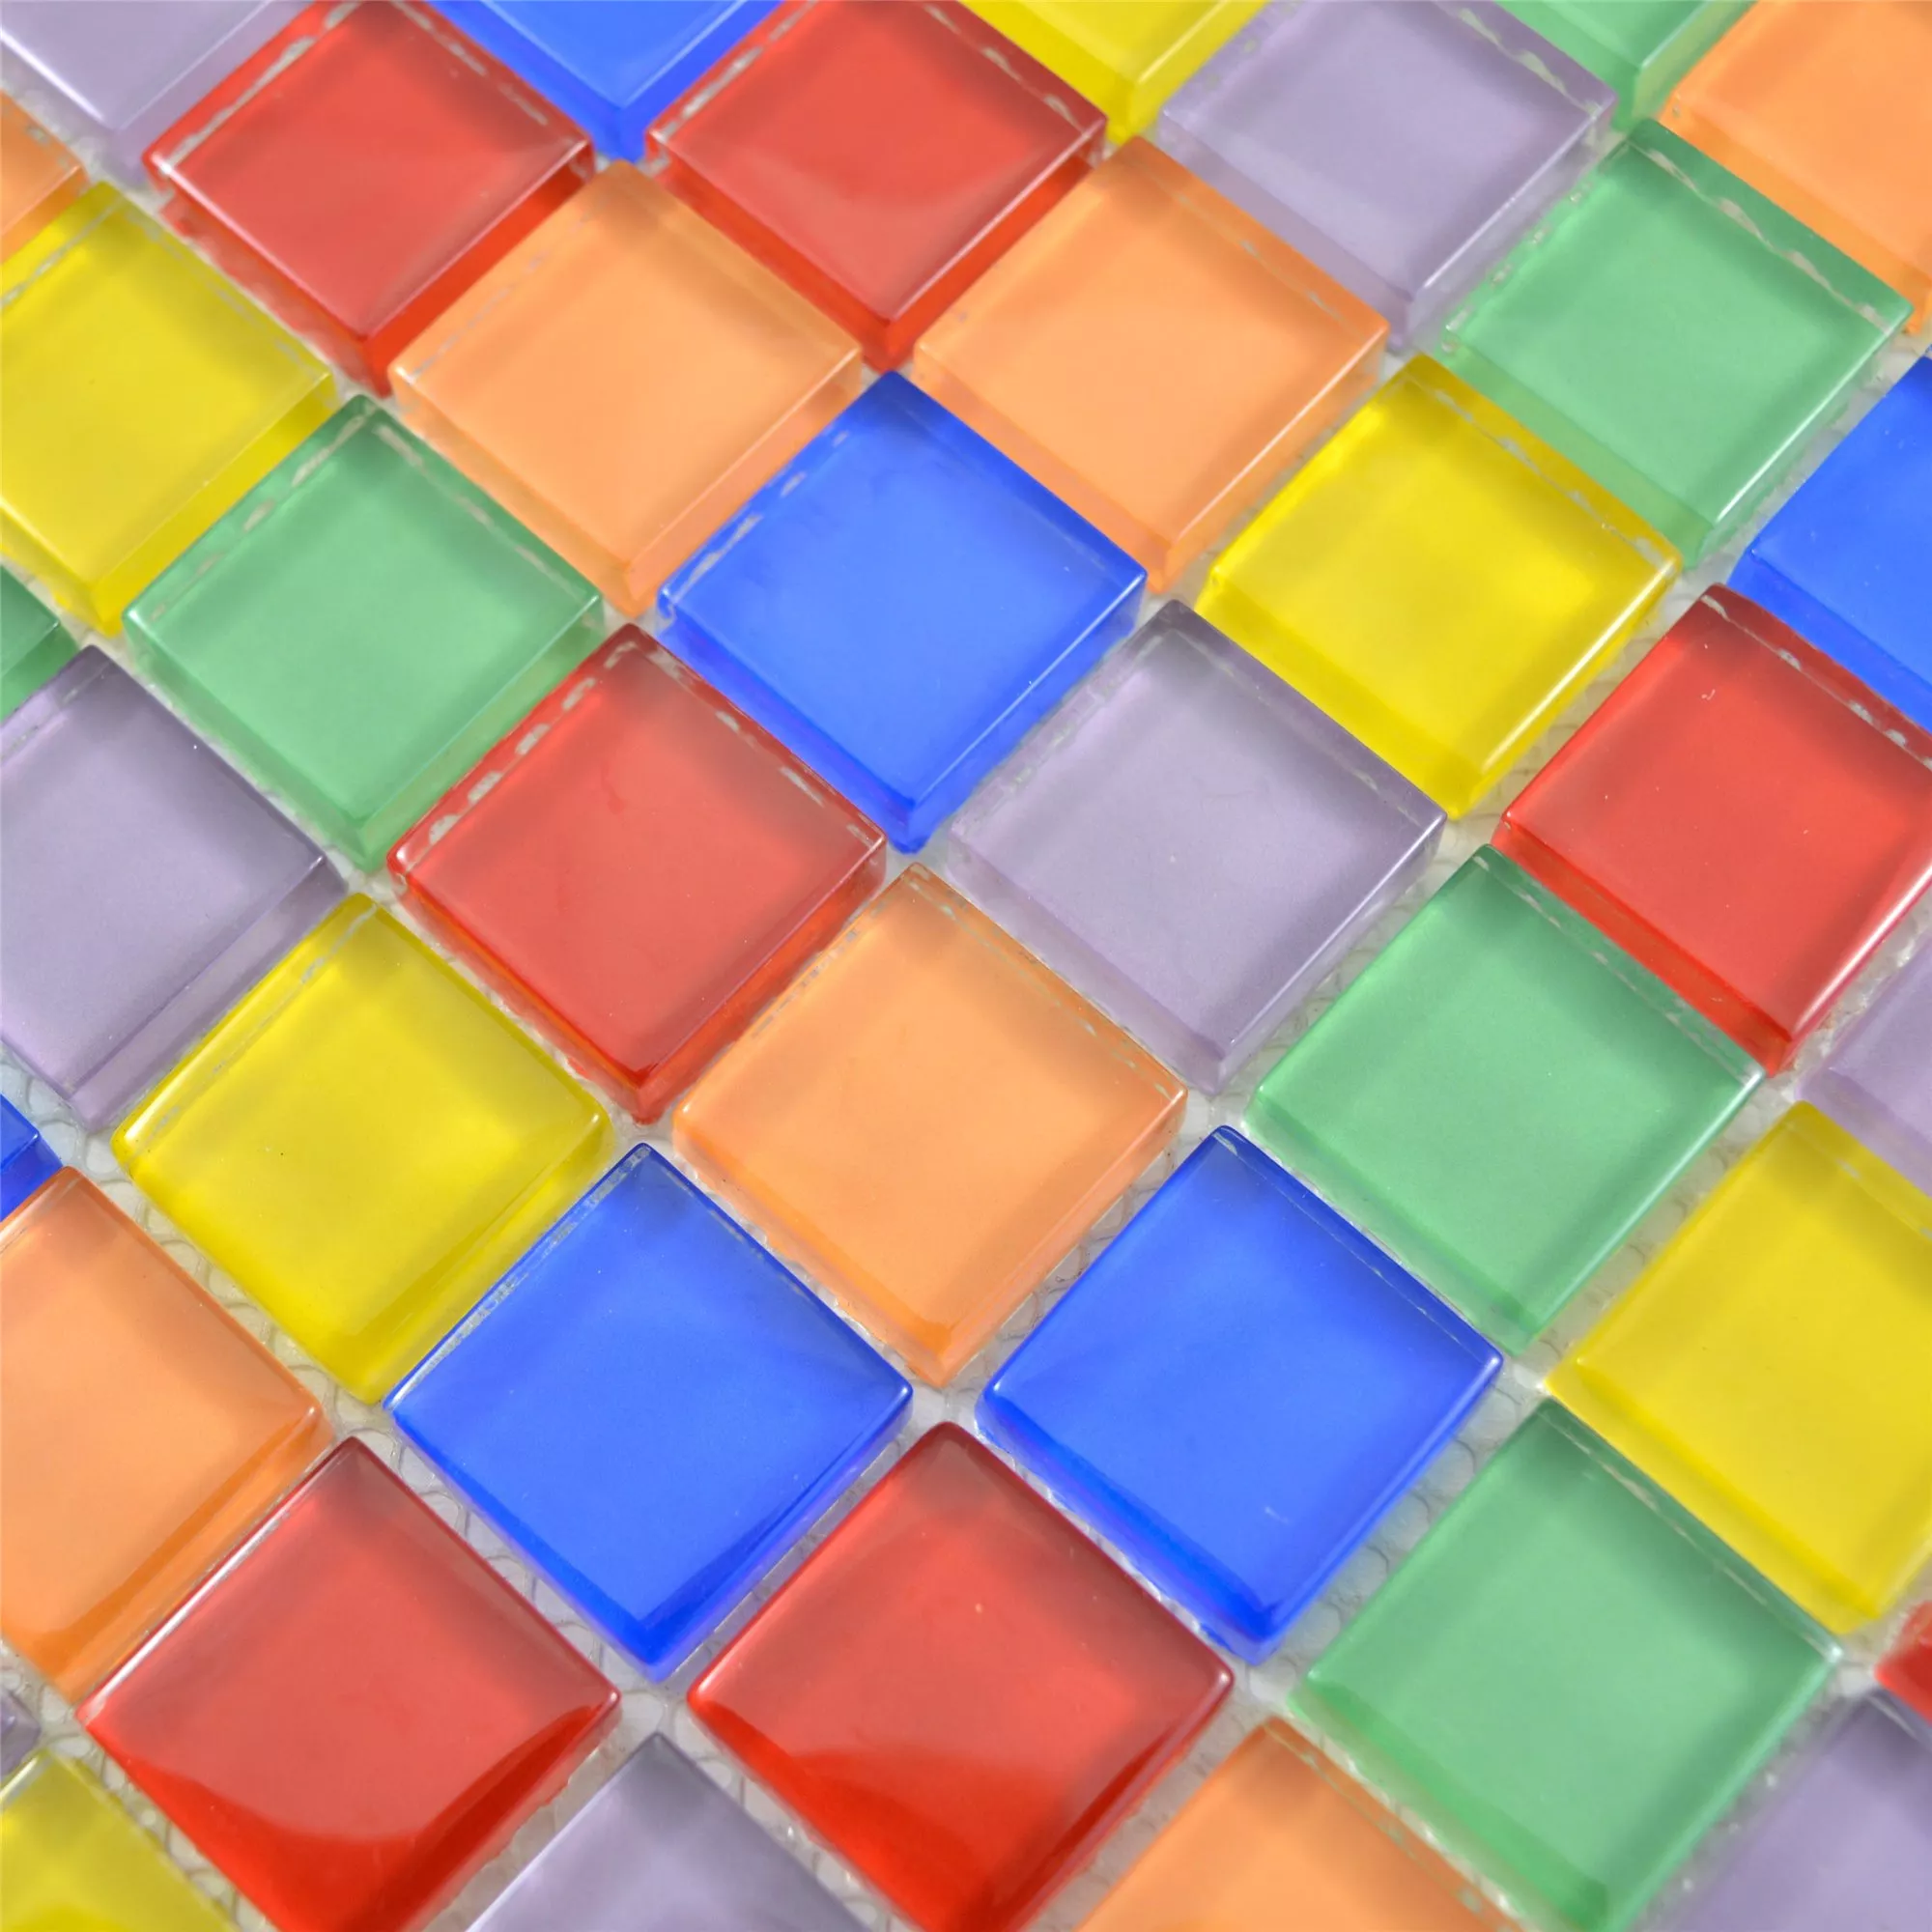 Mozaika Szklana Płytki Ararat Kolorowy Mix